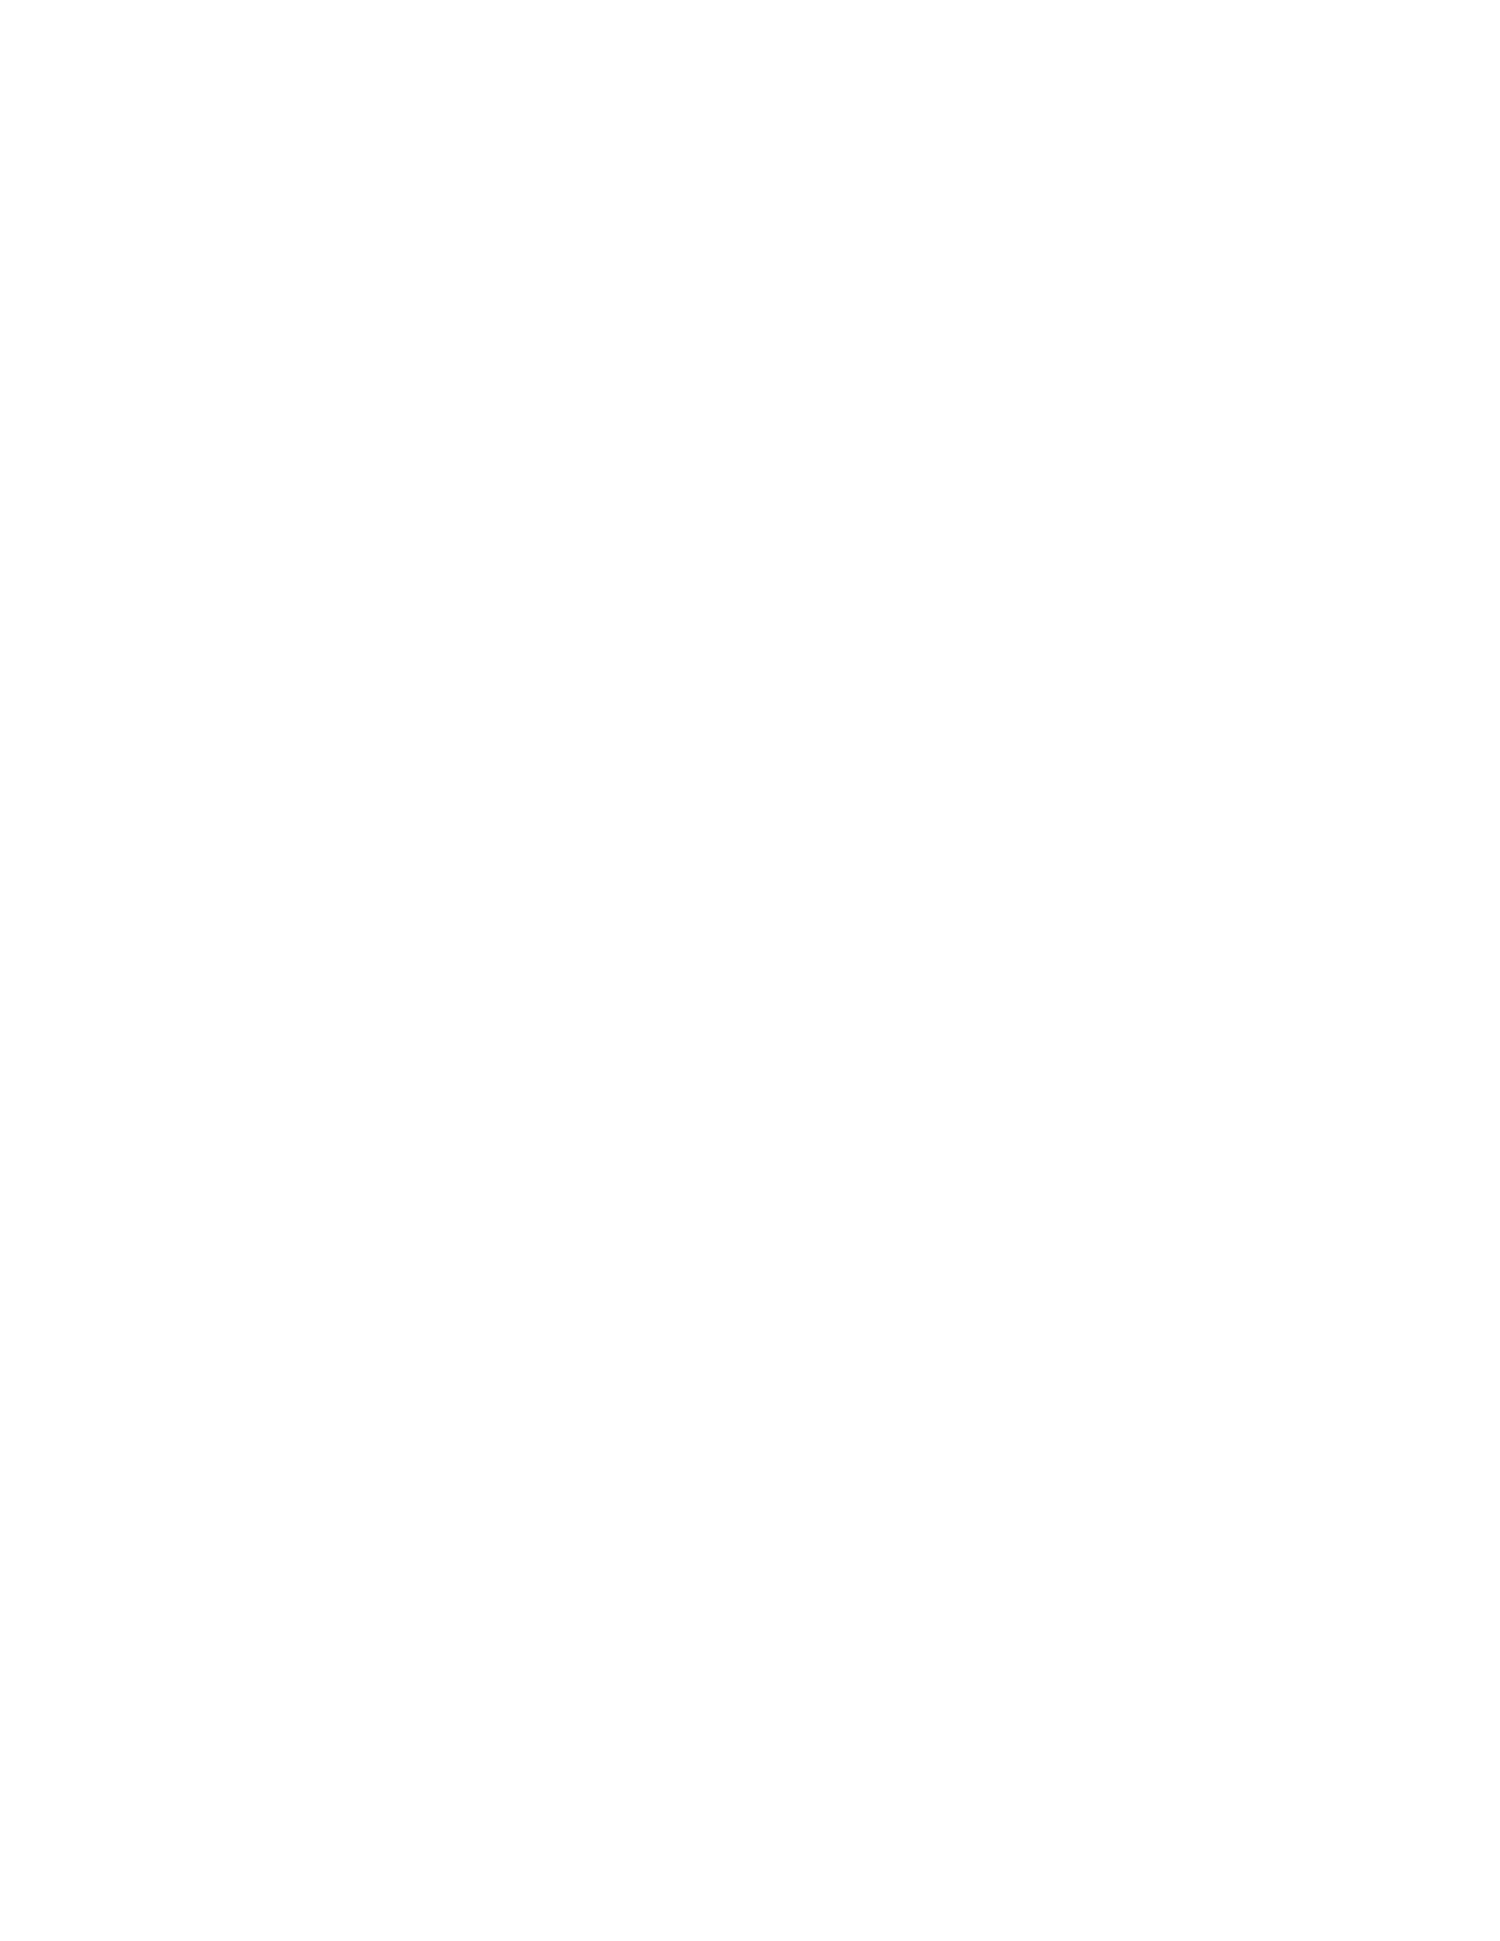 High Prairie Partners, LLC